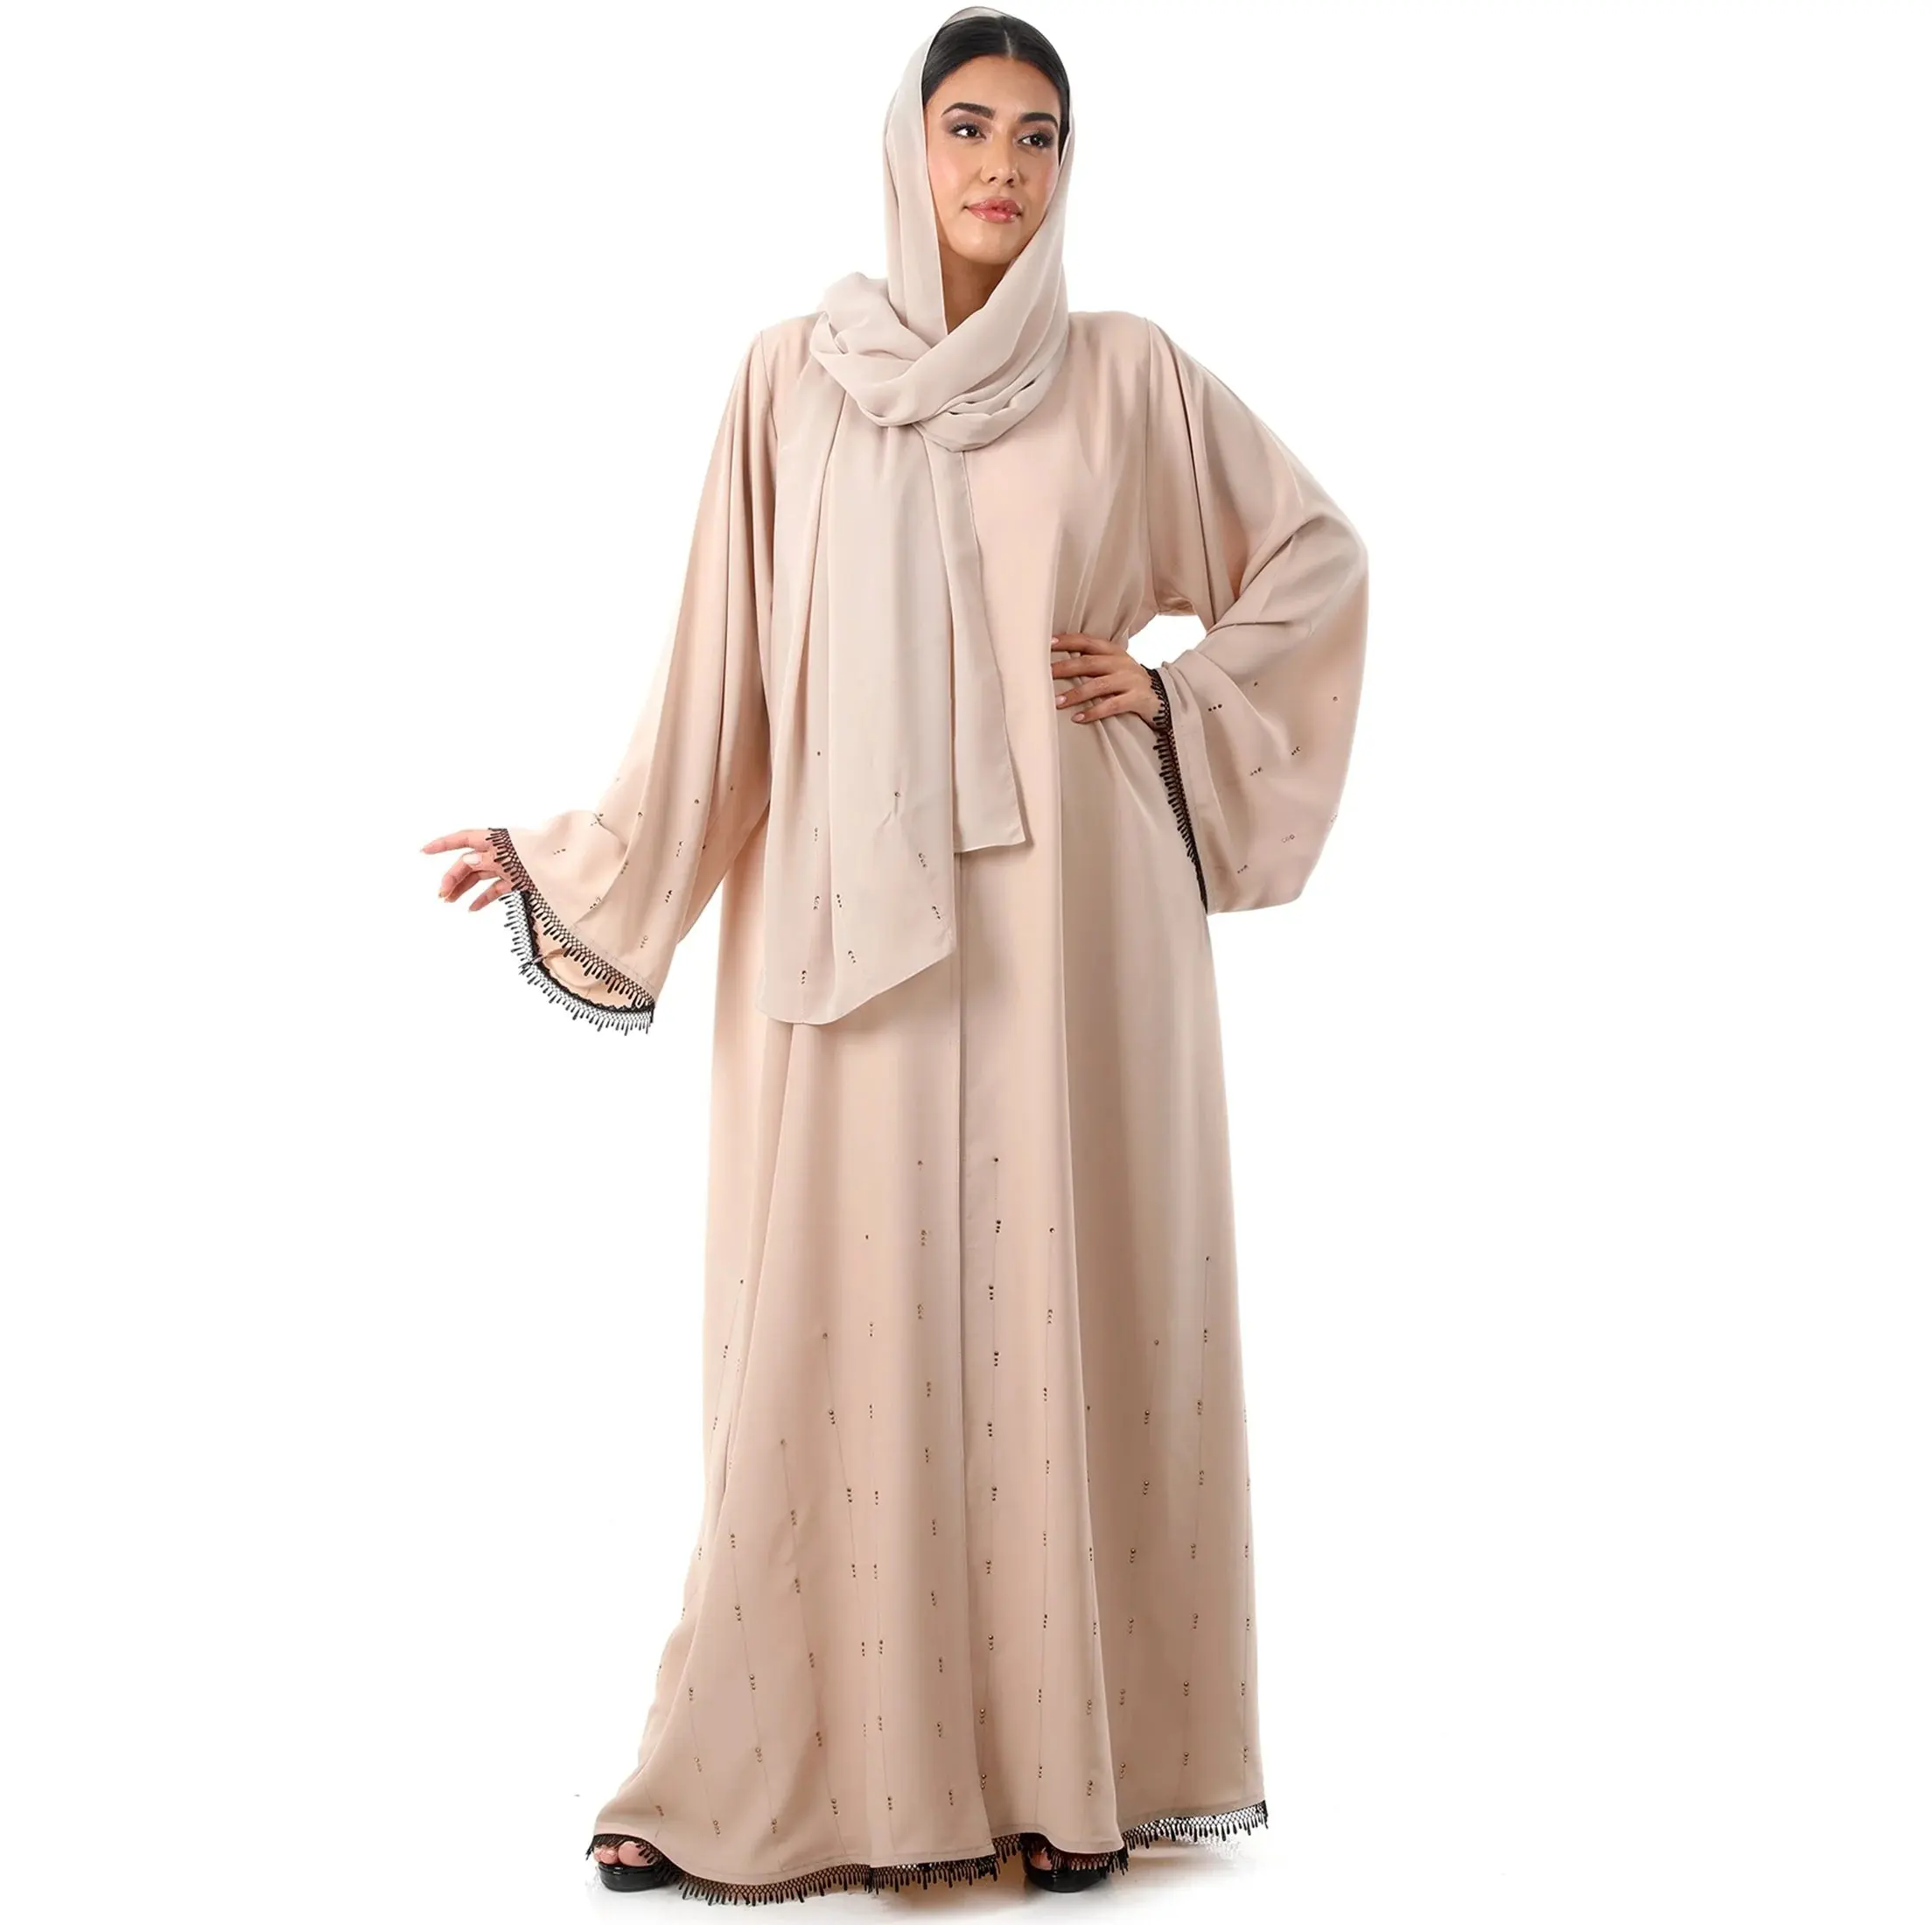 Islâmico turk abaya vestido dubai mulheres muçulmanas partido abayas nova moda respirável abaya mulheres muçulmanas